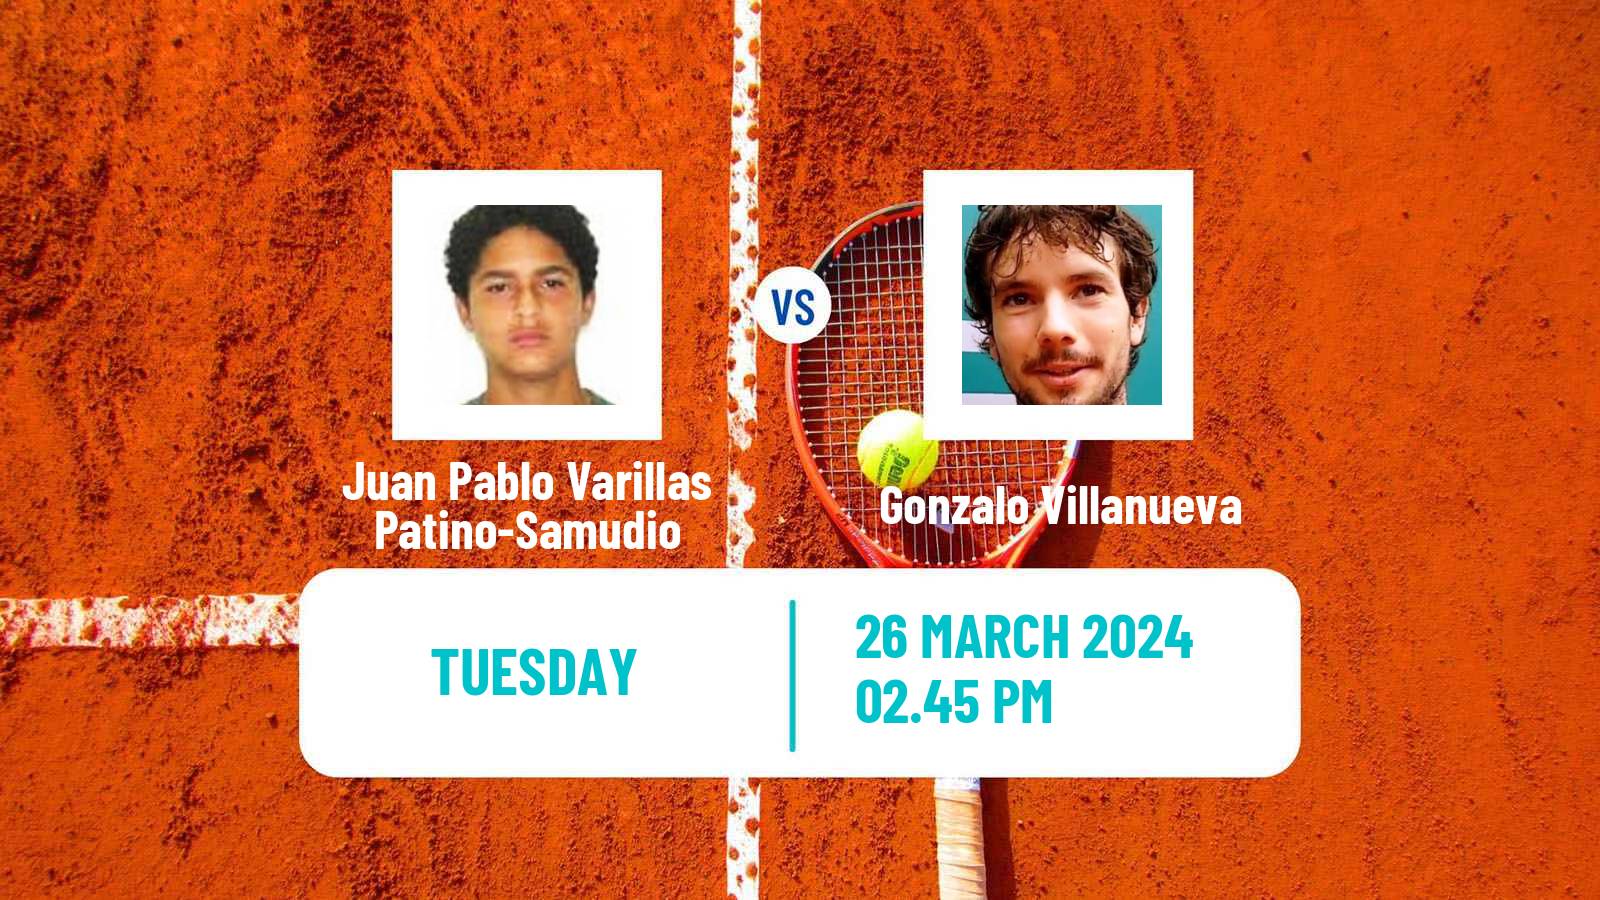 Tennis Sao Leopoldo Challenger Men Juan Pablo Varillas Patino-Samudio - Gonzalo Villanueva